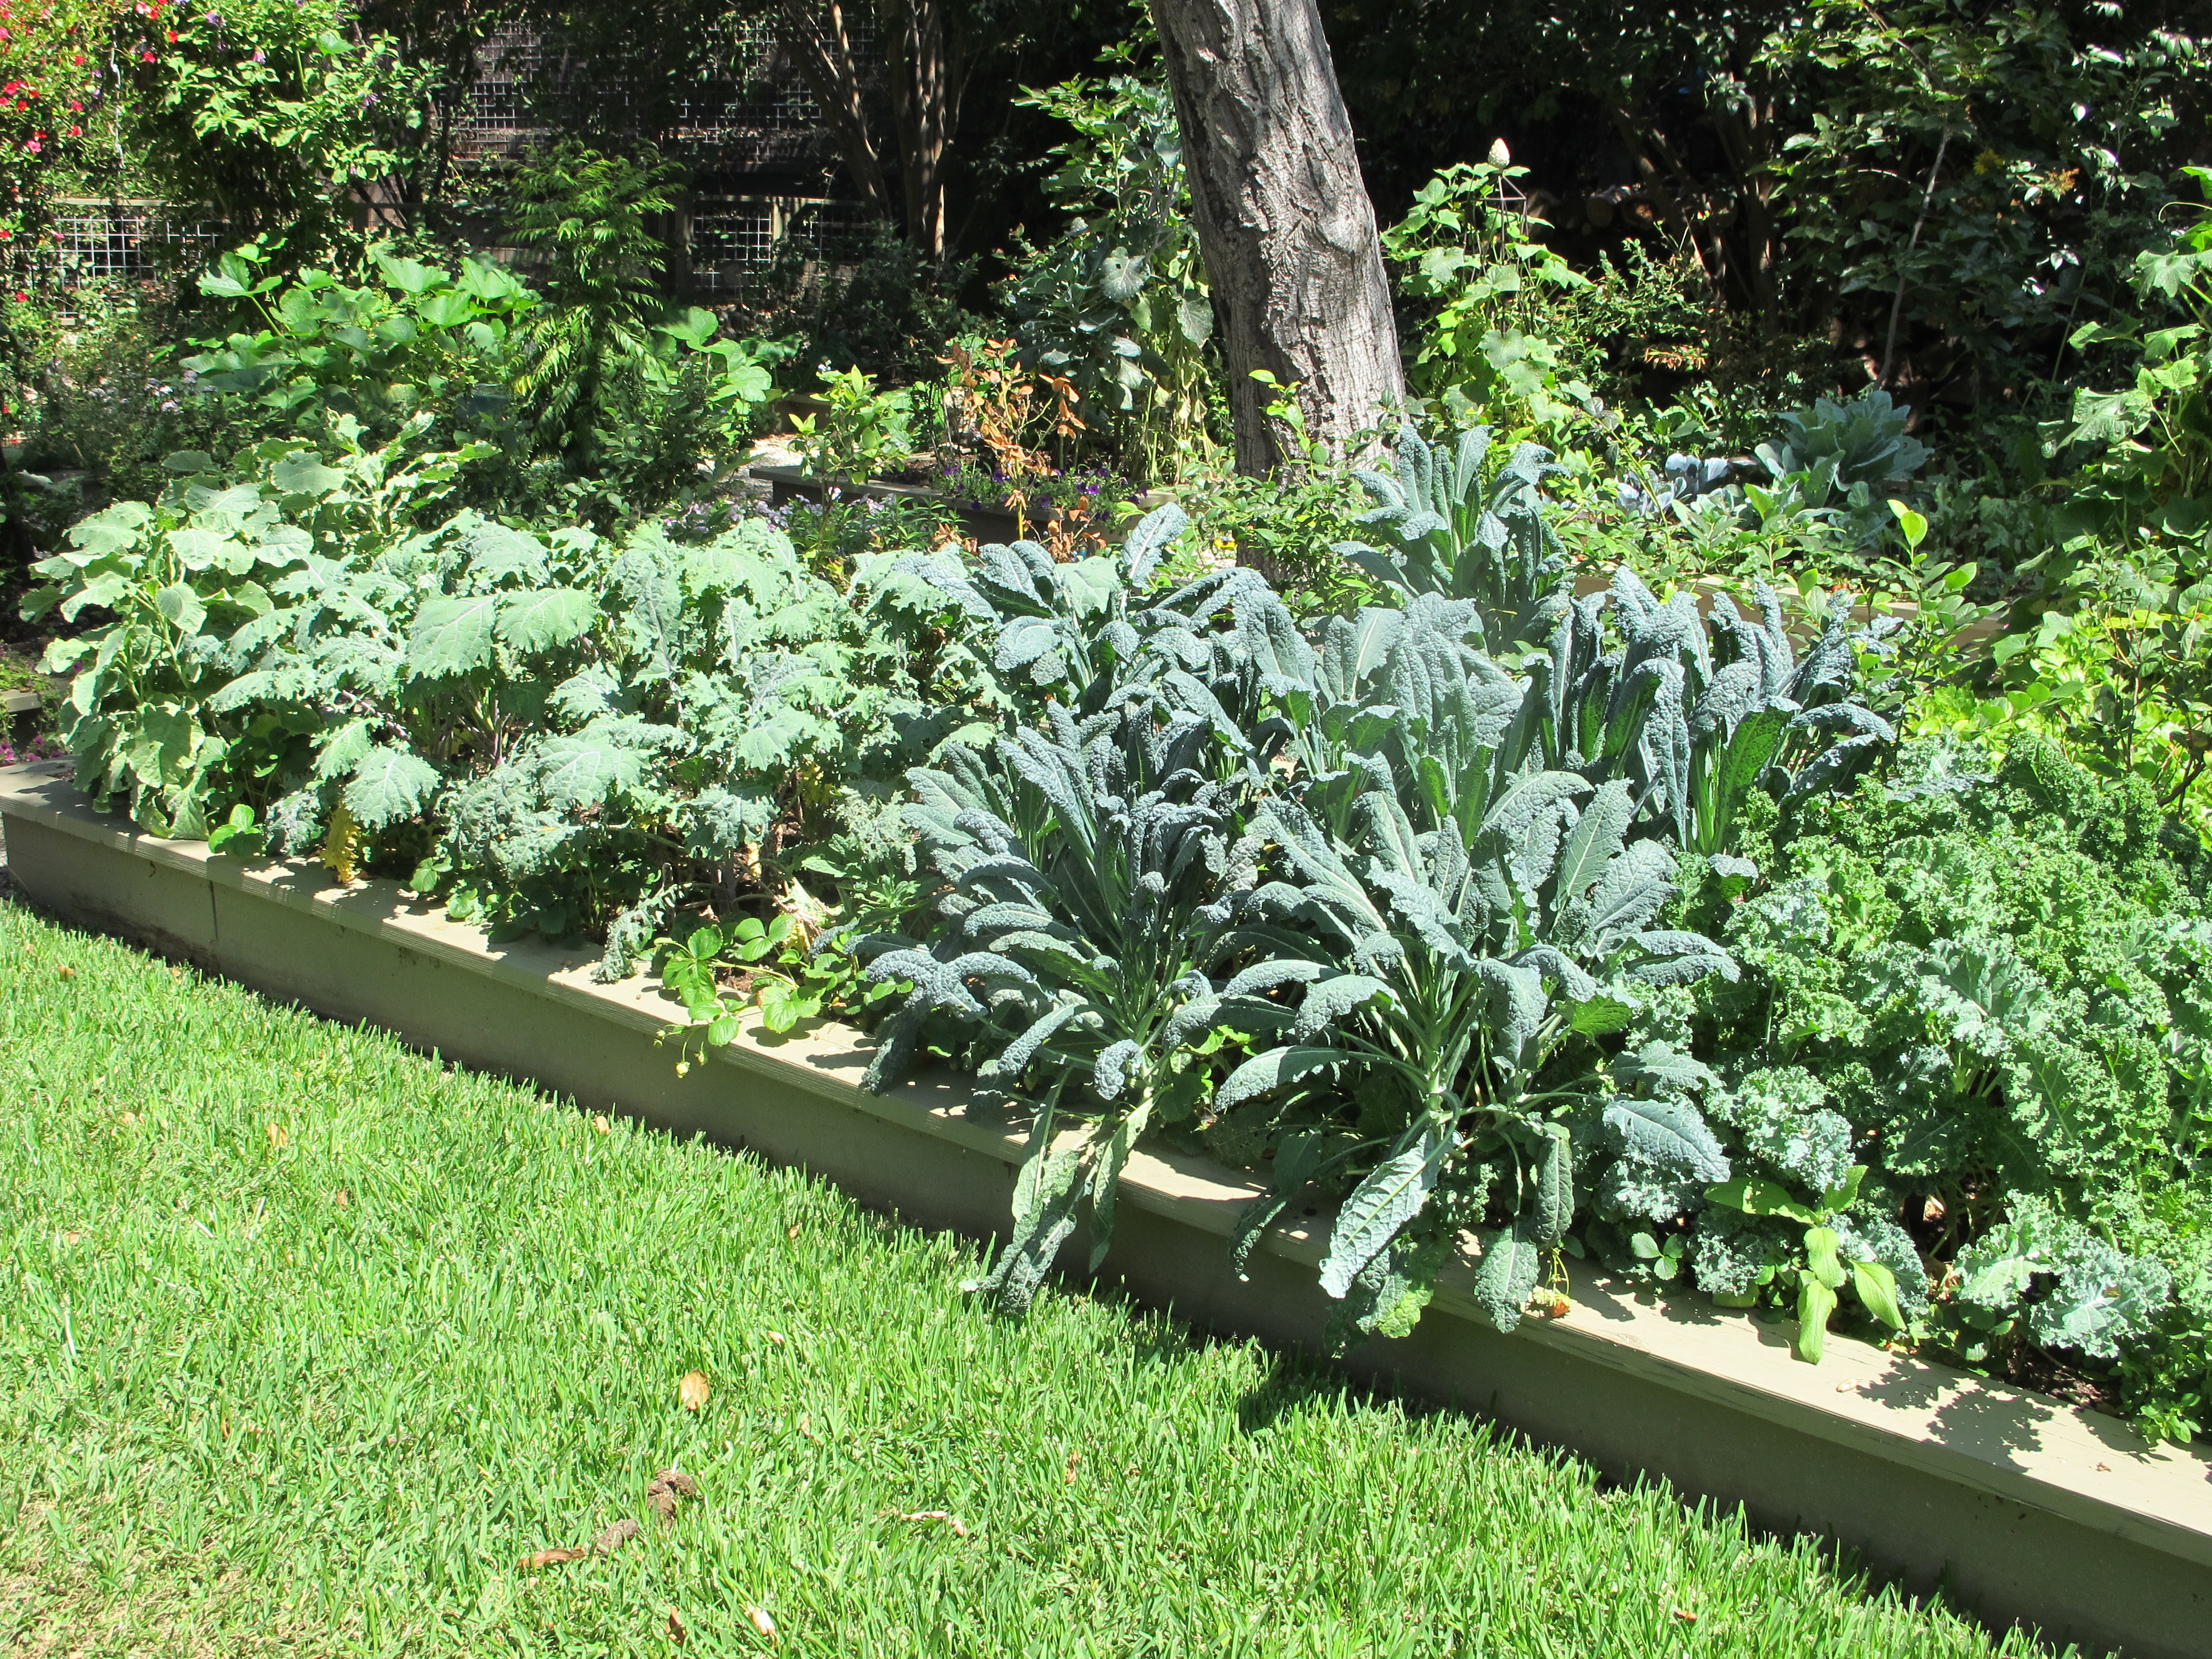 Garden Oatmeal: an Overabundance of Kale and Chard